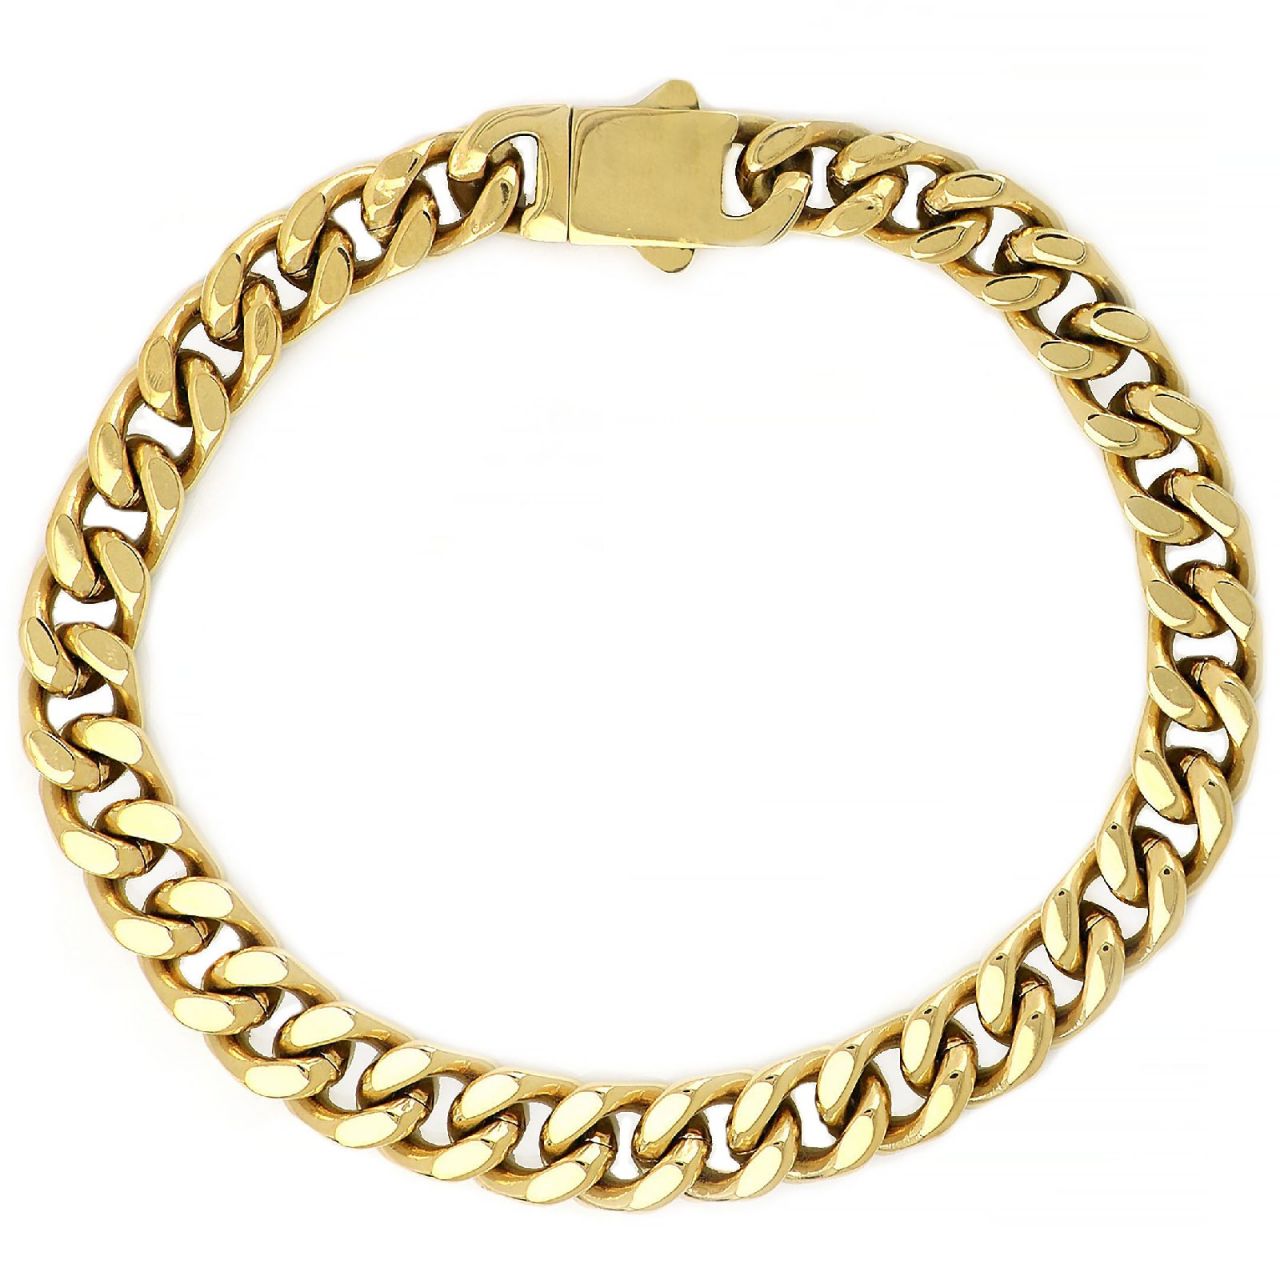 Men's stainless steel gold plated chain bracelet BR22222-02 | Asimetrico.gr